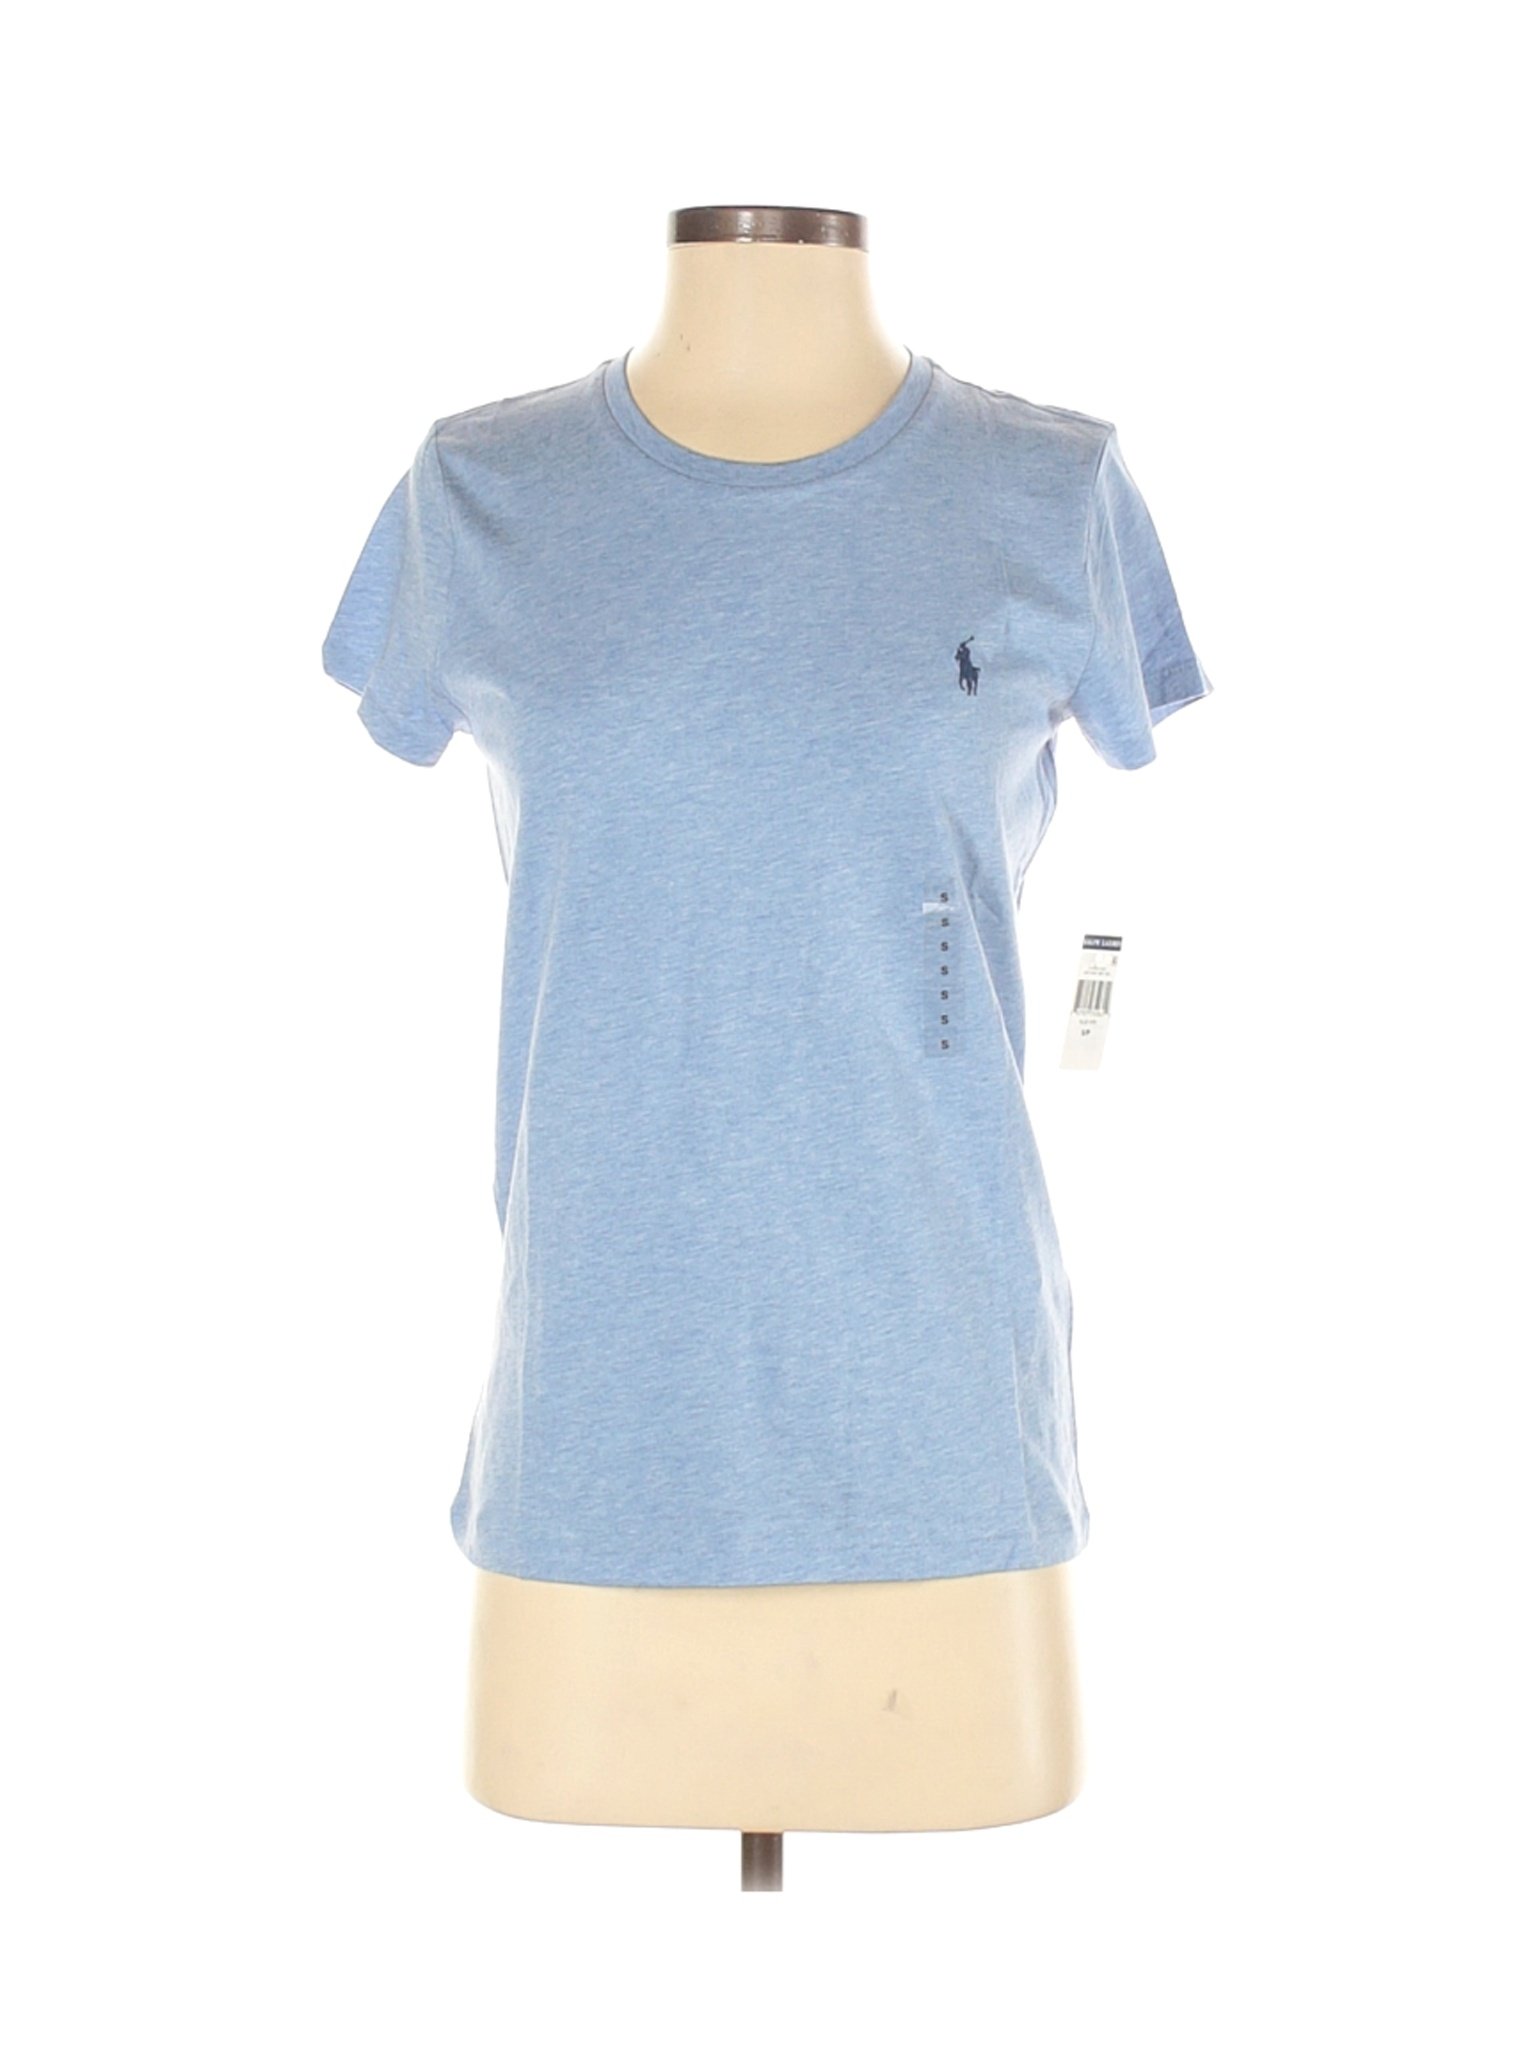 NWT Polo by Ralph Lauren Women Blue Short Sleeve T-Shirt S | eBay